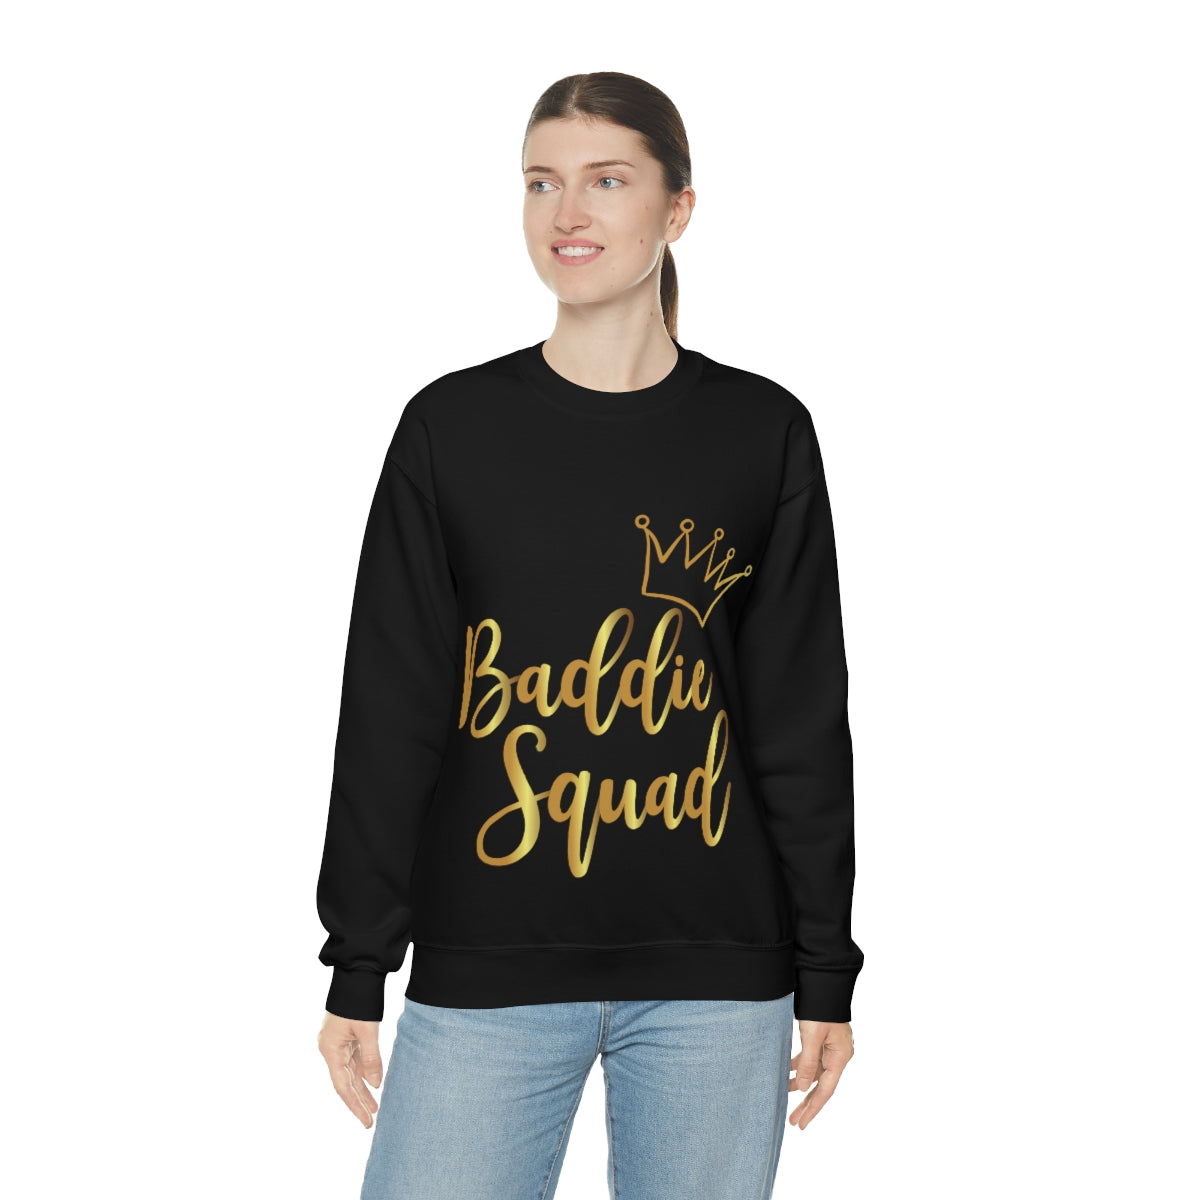 Affirmation Feminist Pro Choice Sweatshirt Unisex  Size – Baddie Squad Printify